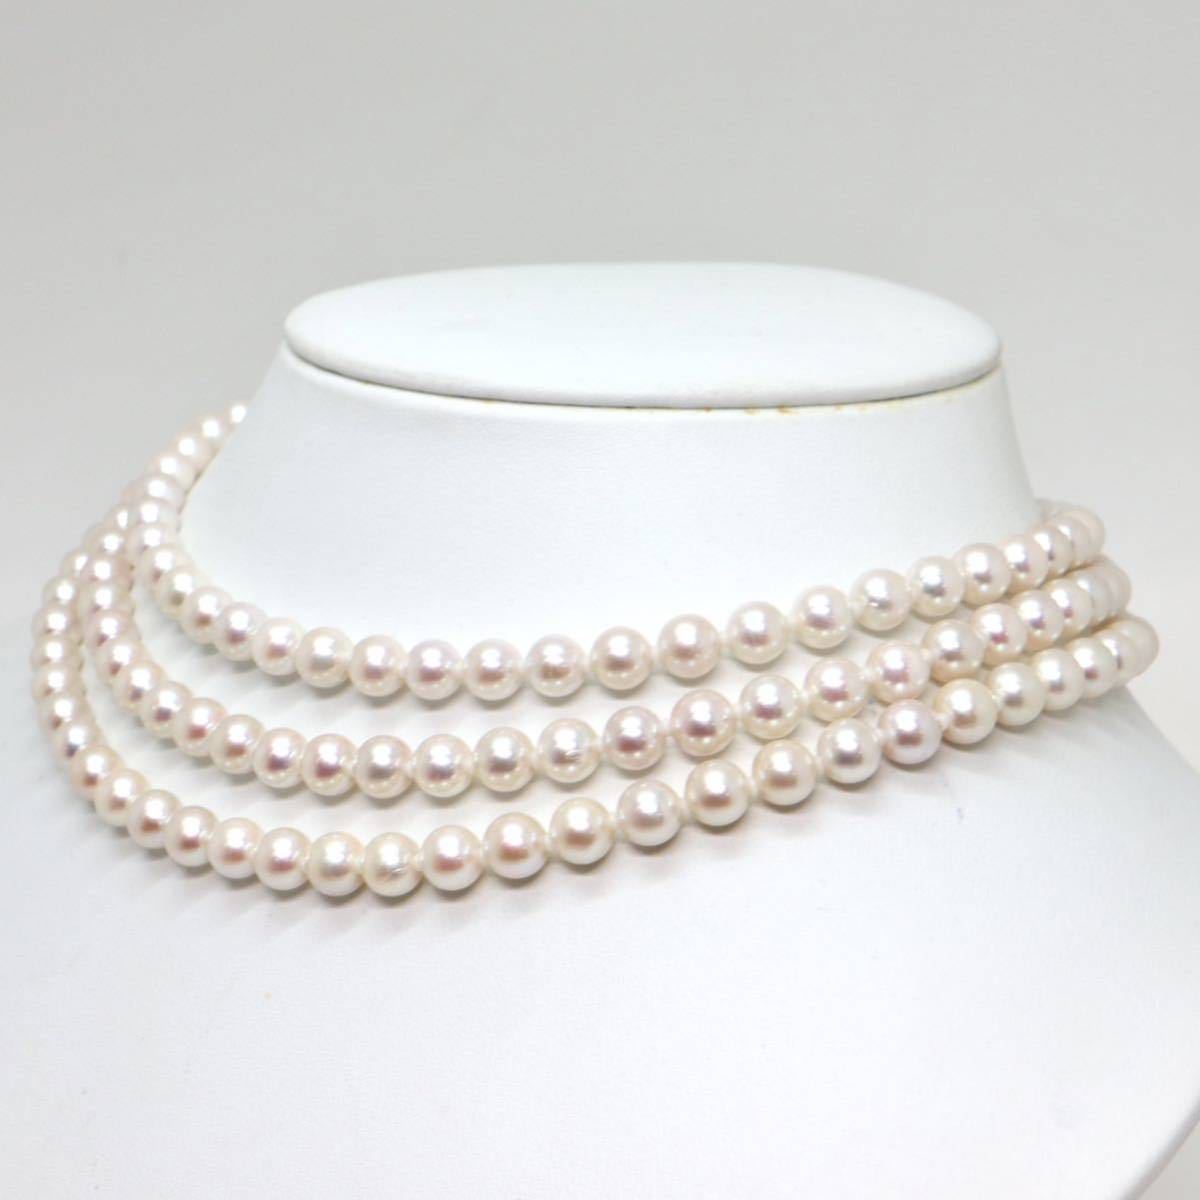 《アコヤ本真珠3連ネックレス》F 6.0-6.5mm珠 59.7g 36cm pearl necklace ジュエリー jewelry EC0/EC0_画像3